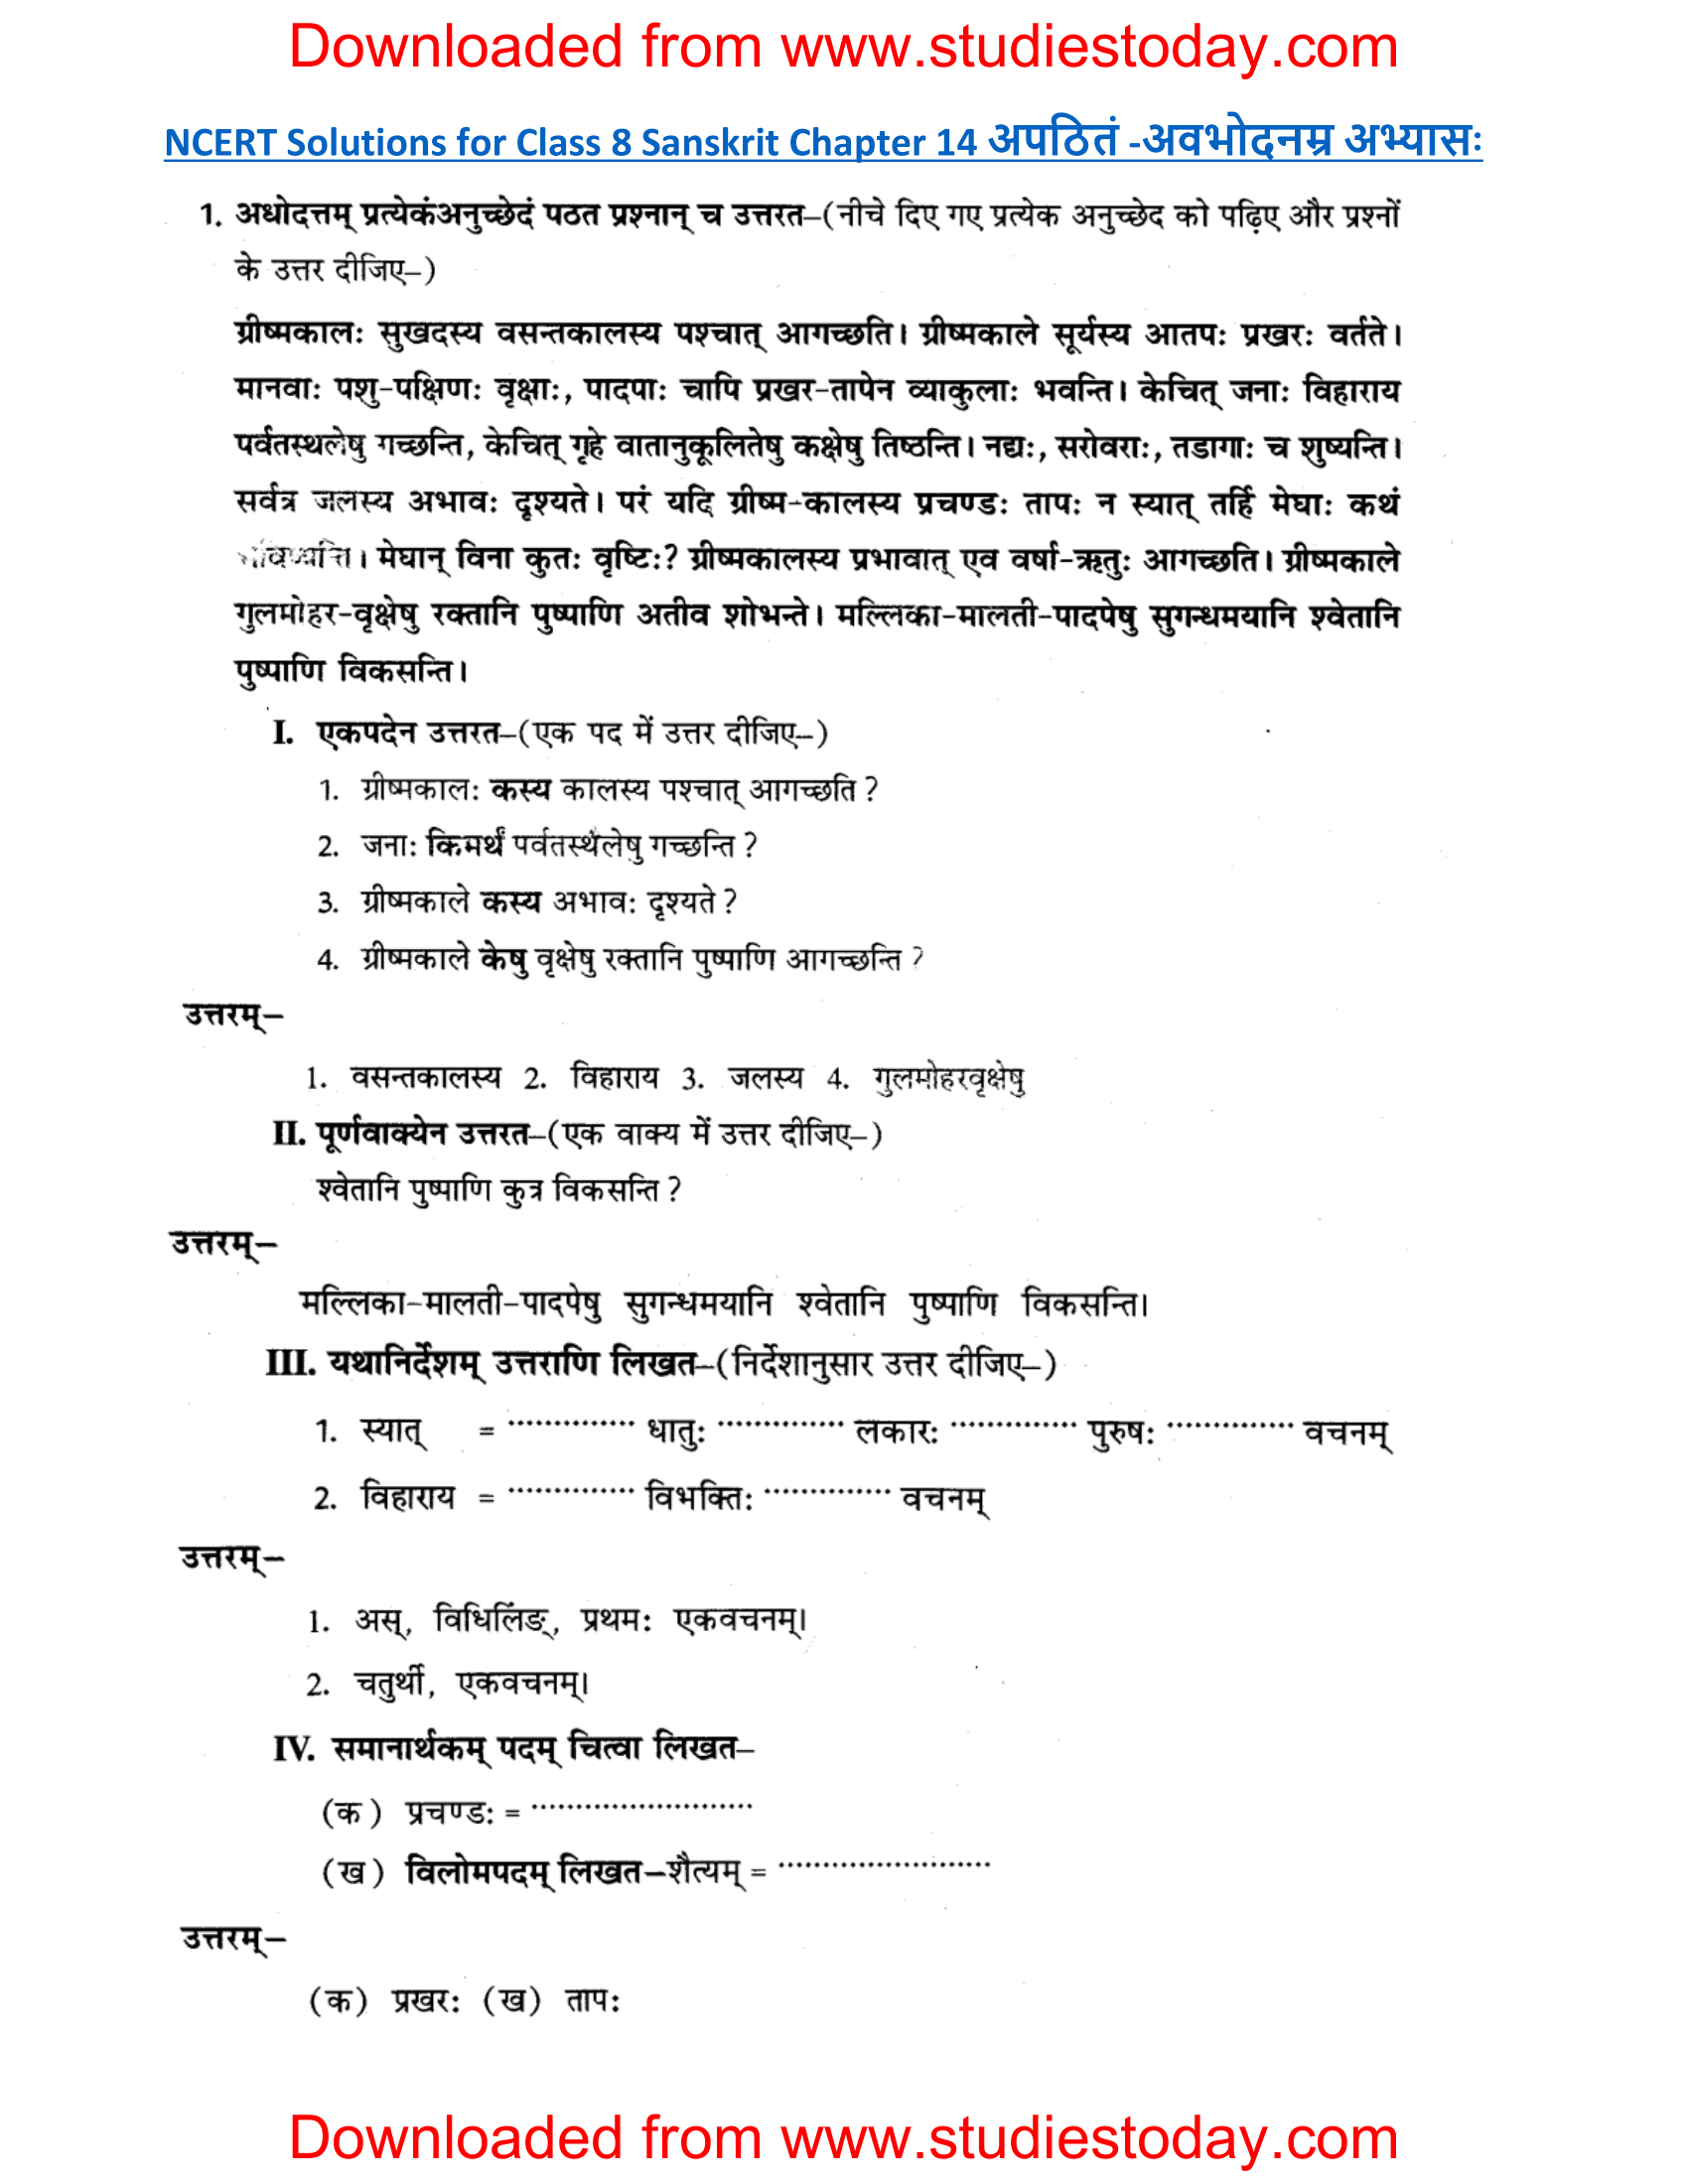 ncert-solutions-class-8-sanskrit-chapter-14-apthint-avbodhan-abhyas-1